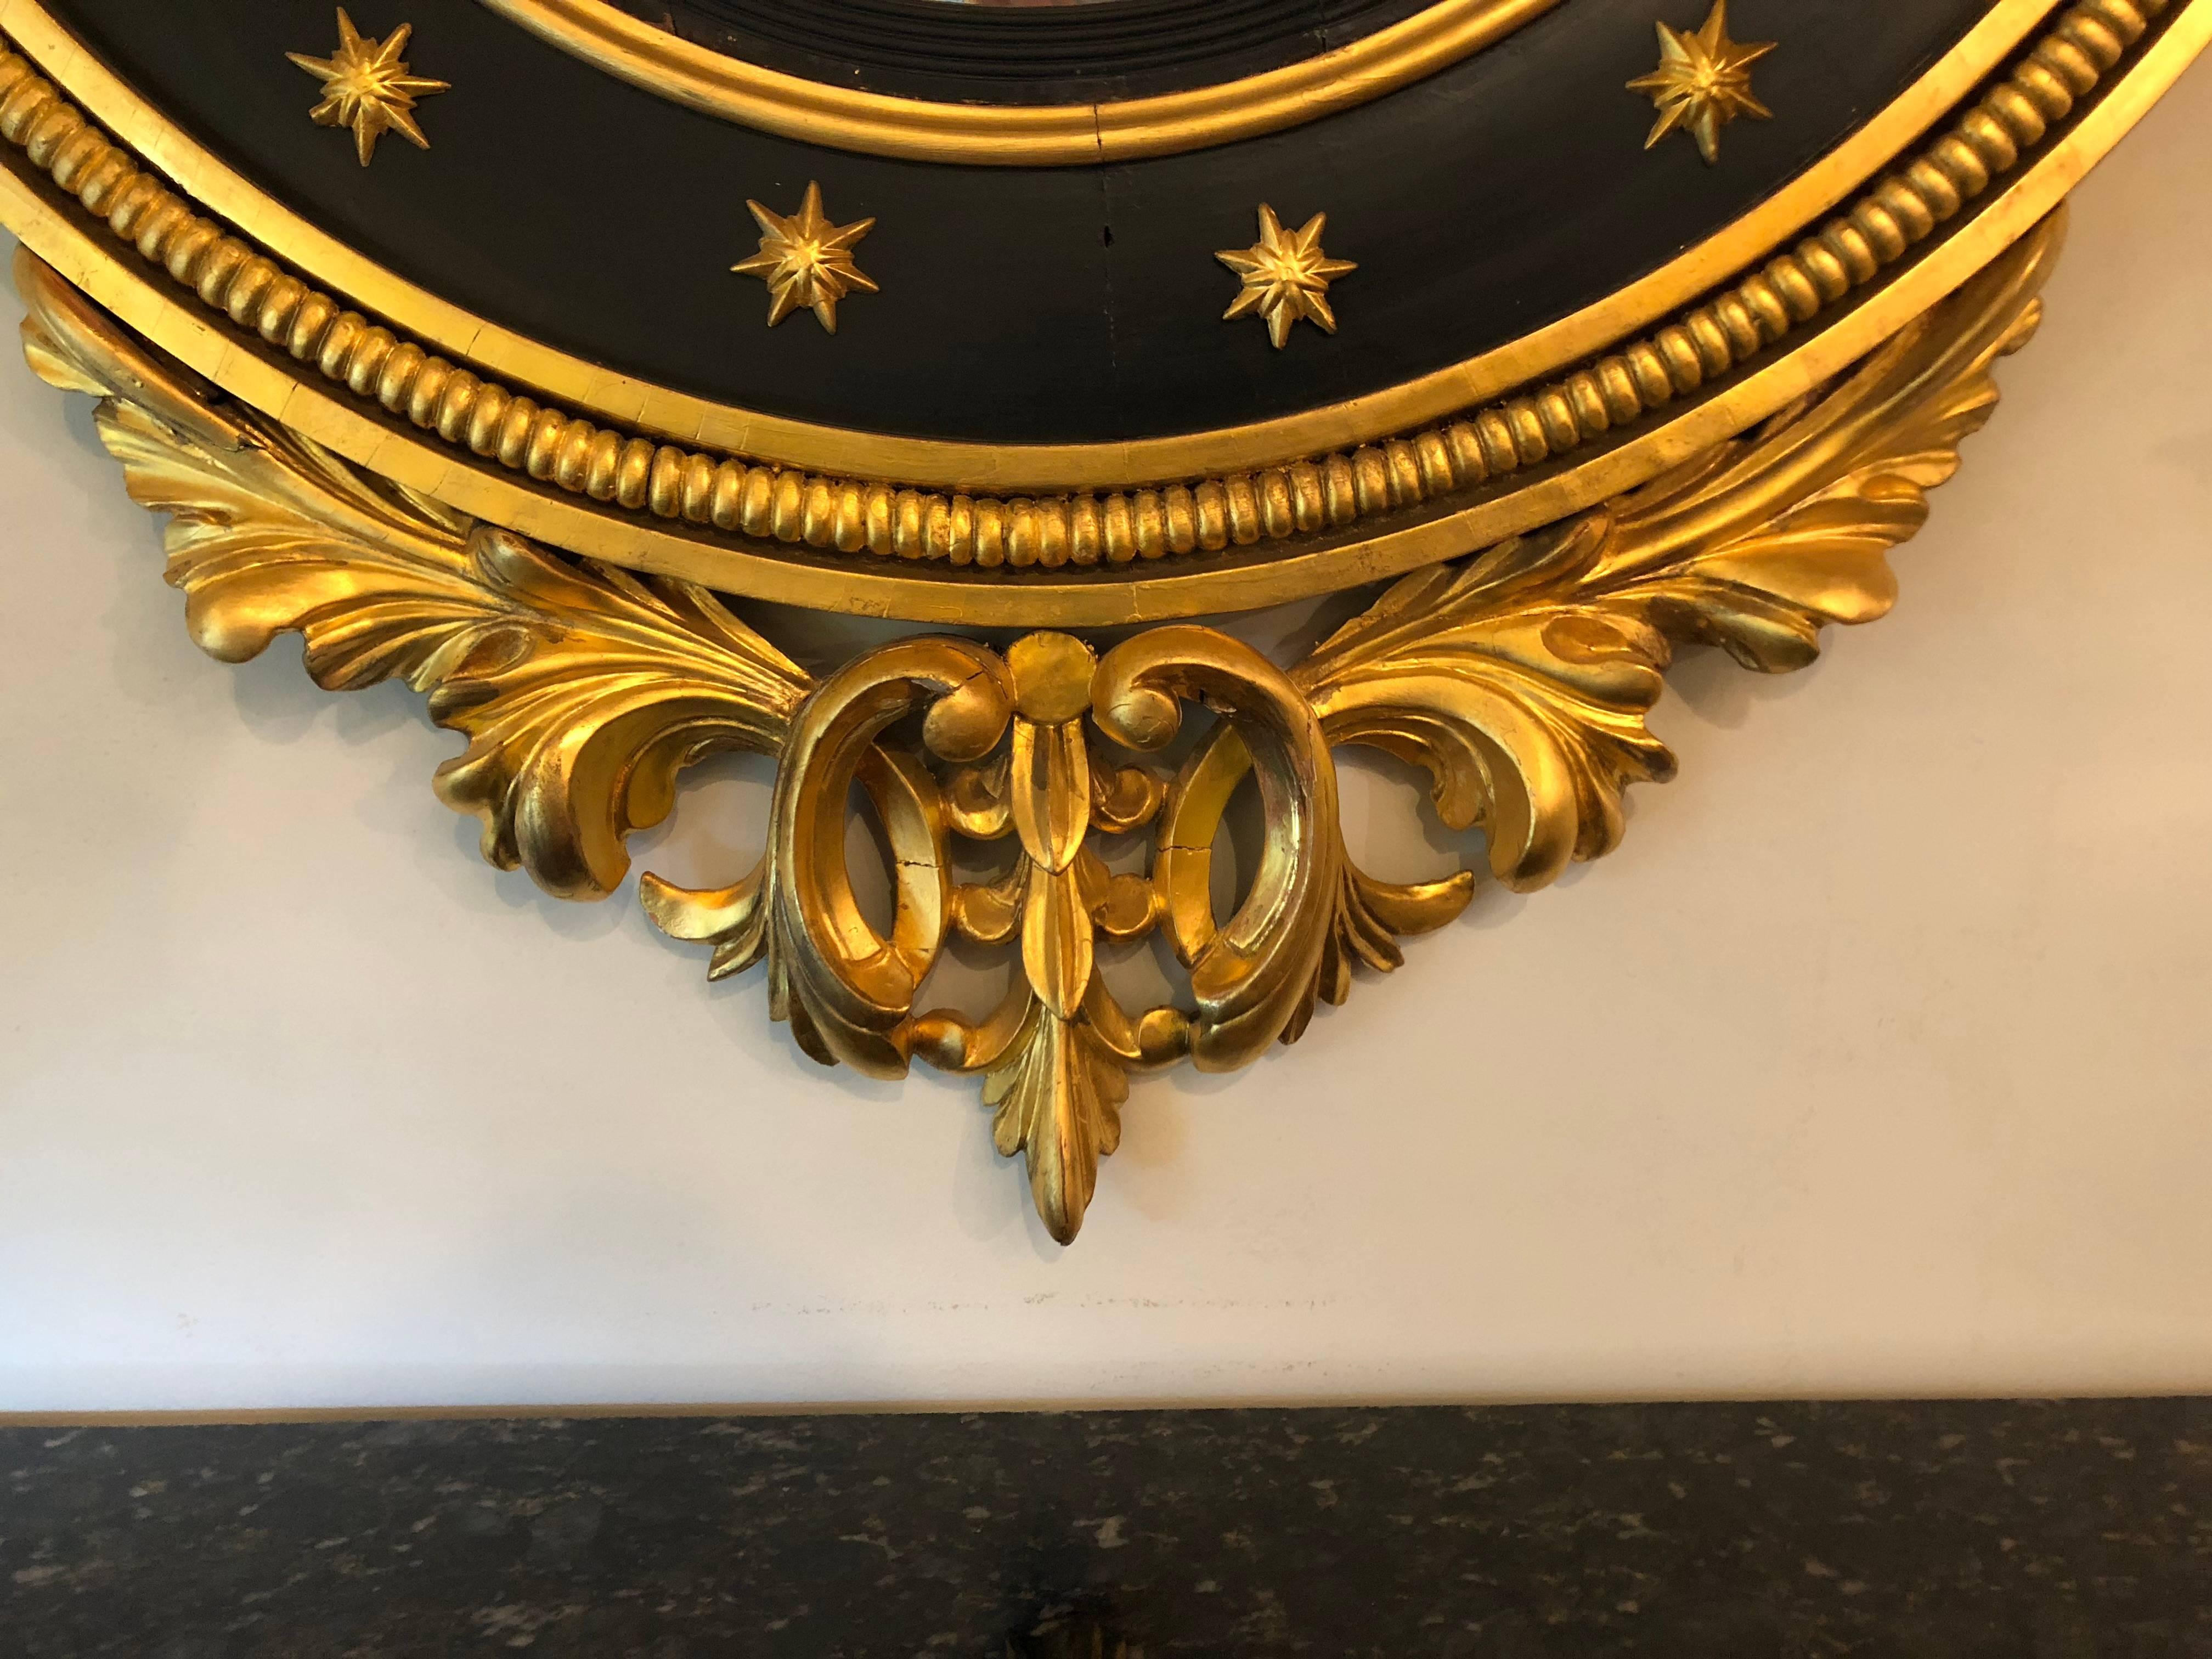 Regency-Spiegel aus dem späten 19. oder sehr frühen 20. Jahrhundert, geschnitzt und ebonisiert aus vergoldetem Holz. Der konvexe Spiegel ist in einen spektakulären, mit Ebenholz und Gold verzierten Rahmen eingefasst, dessen unterer Teil zu einem